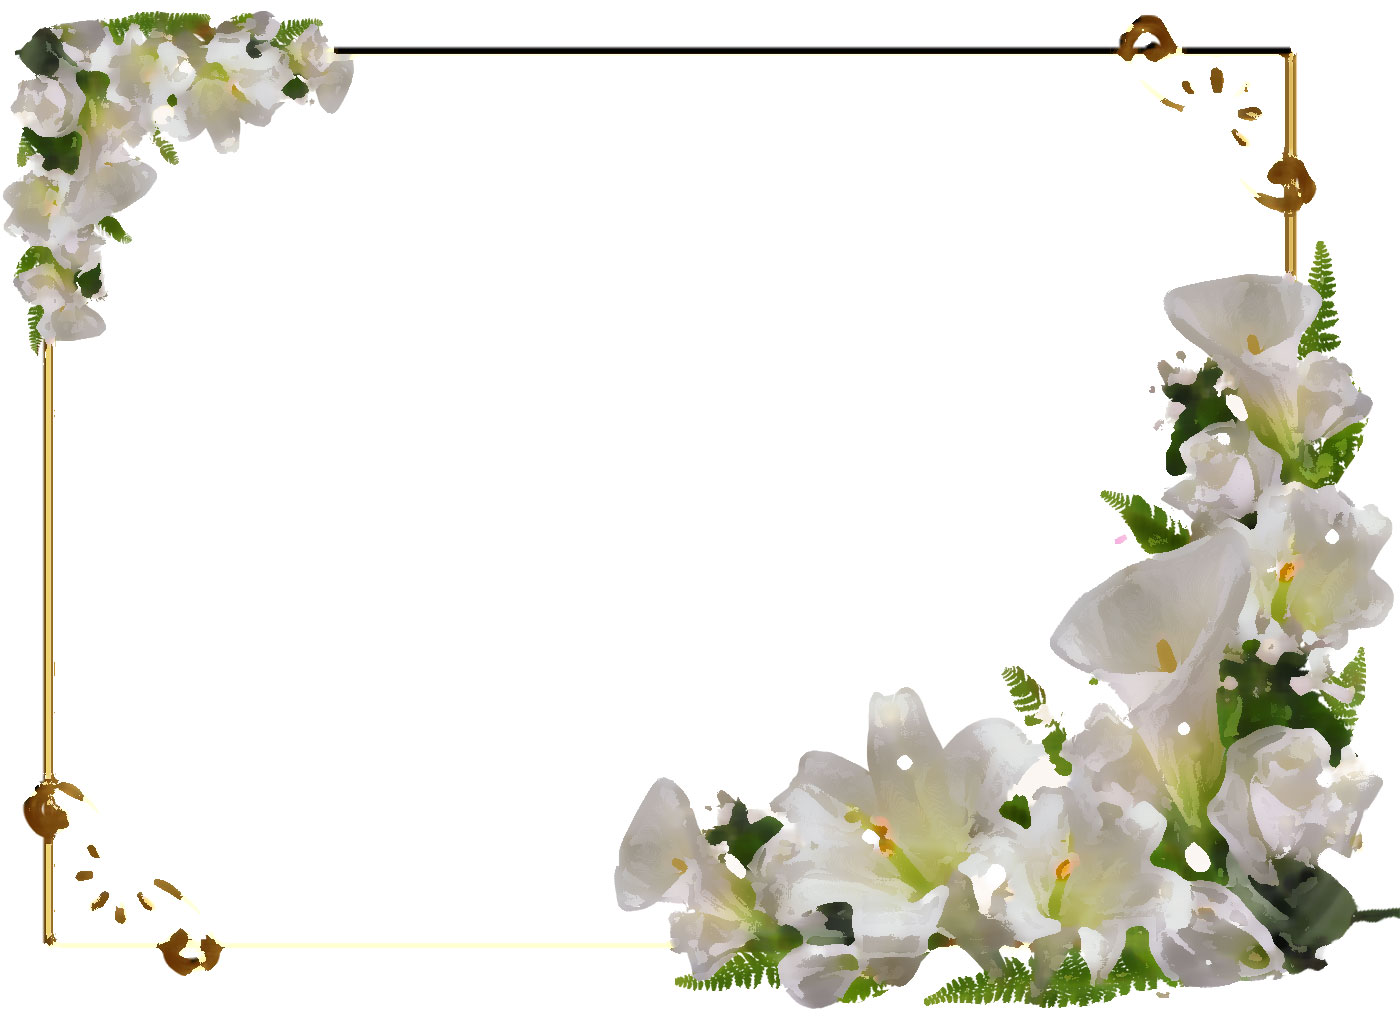 百合 ゆり の花の画像 イラスト フリー素材 No 133 白ユリ コーナー